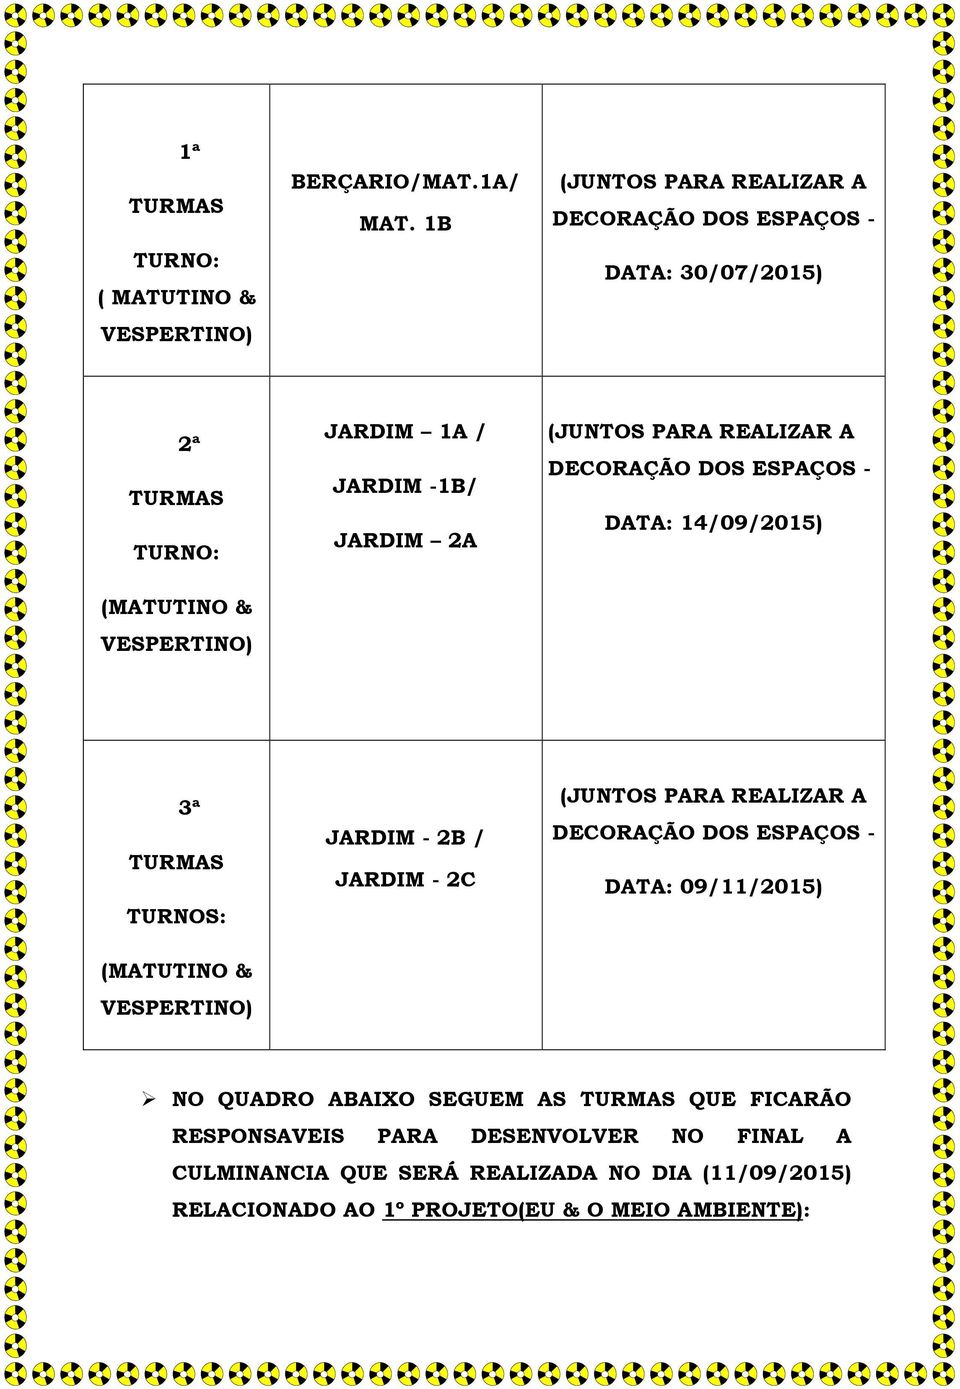 - DATA: 14/09/2015) 3ª TURNOS: JARDIM - 2B / JARDIM - 2C DECORAÇÃO DOS ESPAÇOS - DATA: 09/11/2015) NO